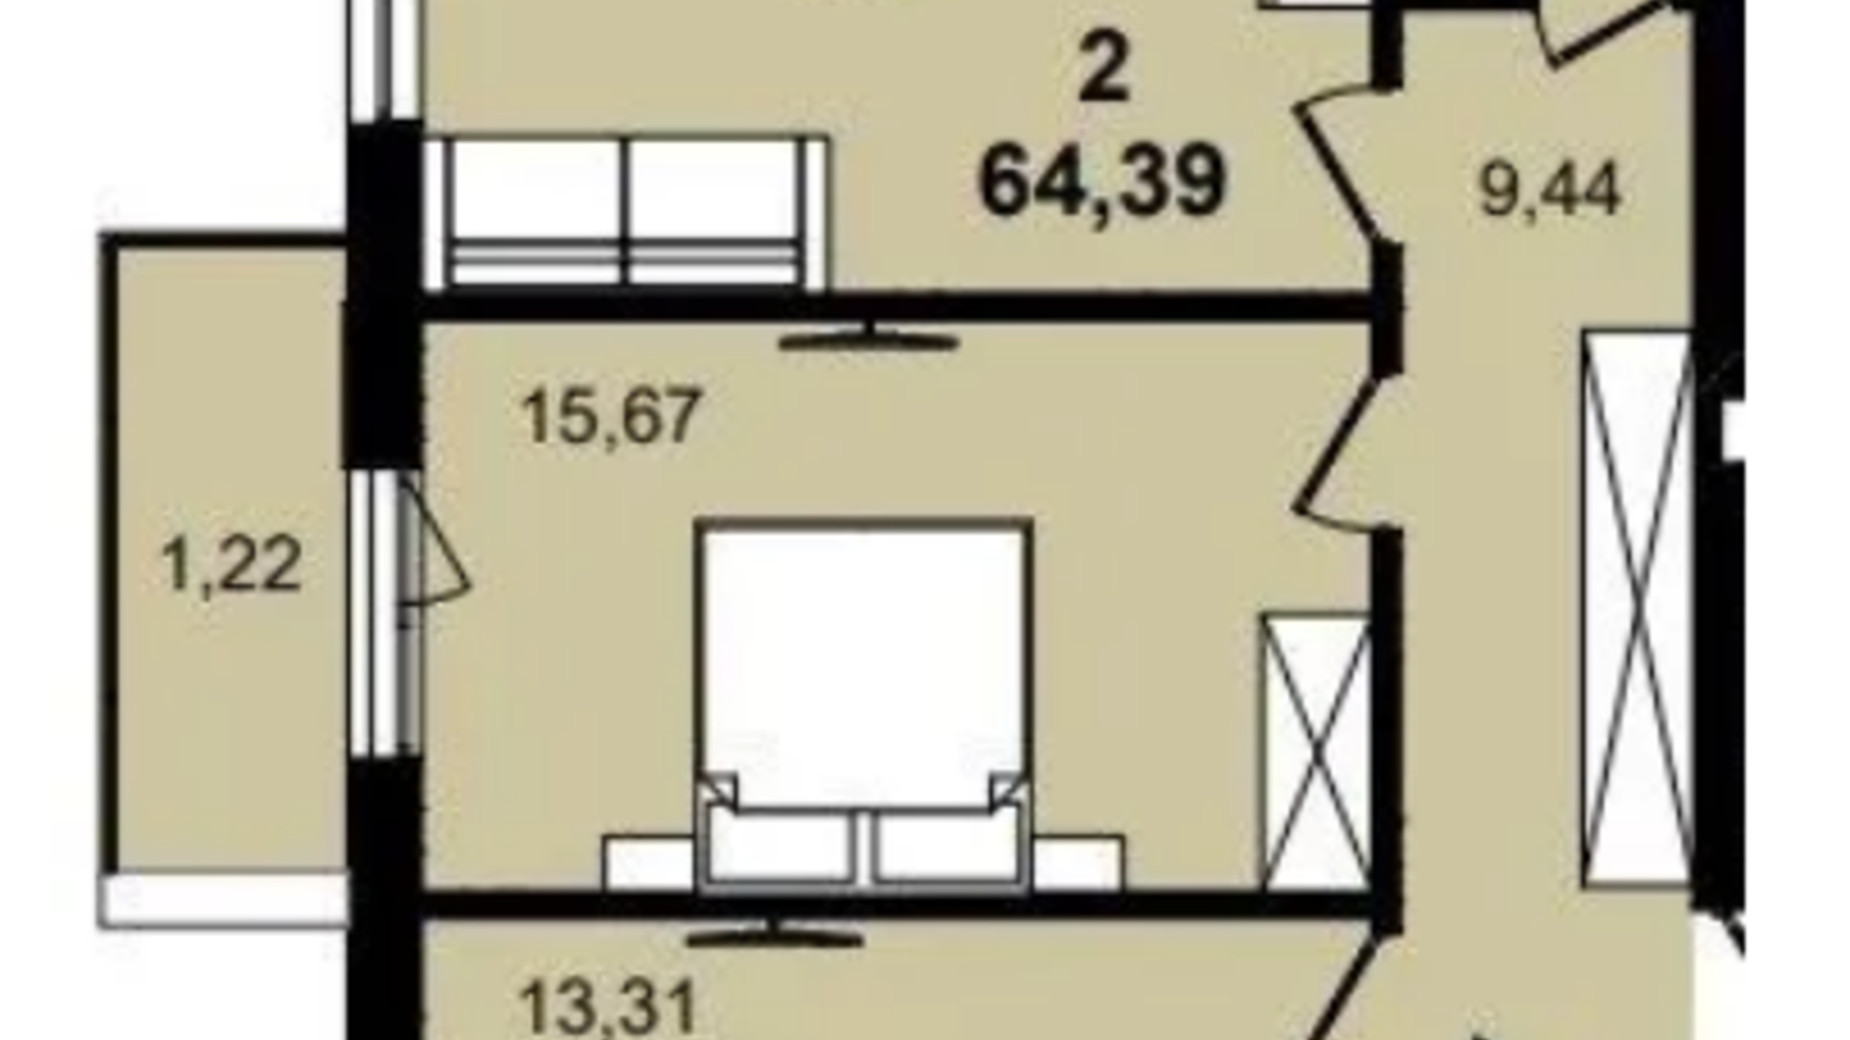 Планування 2-кімнатної квартири в ЖК Infinity Park 64.39 м², фото 630792